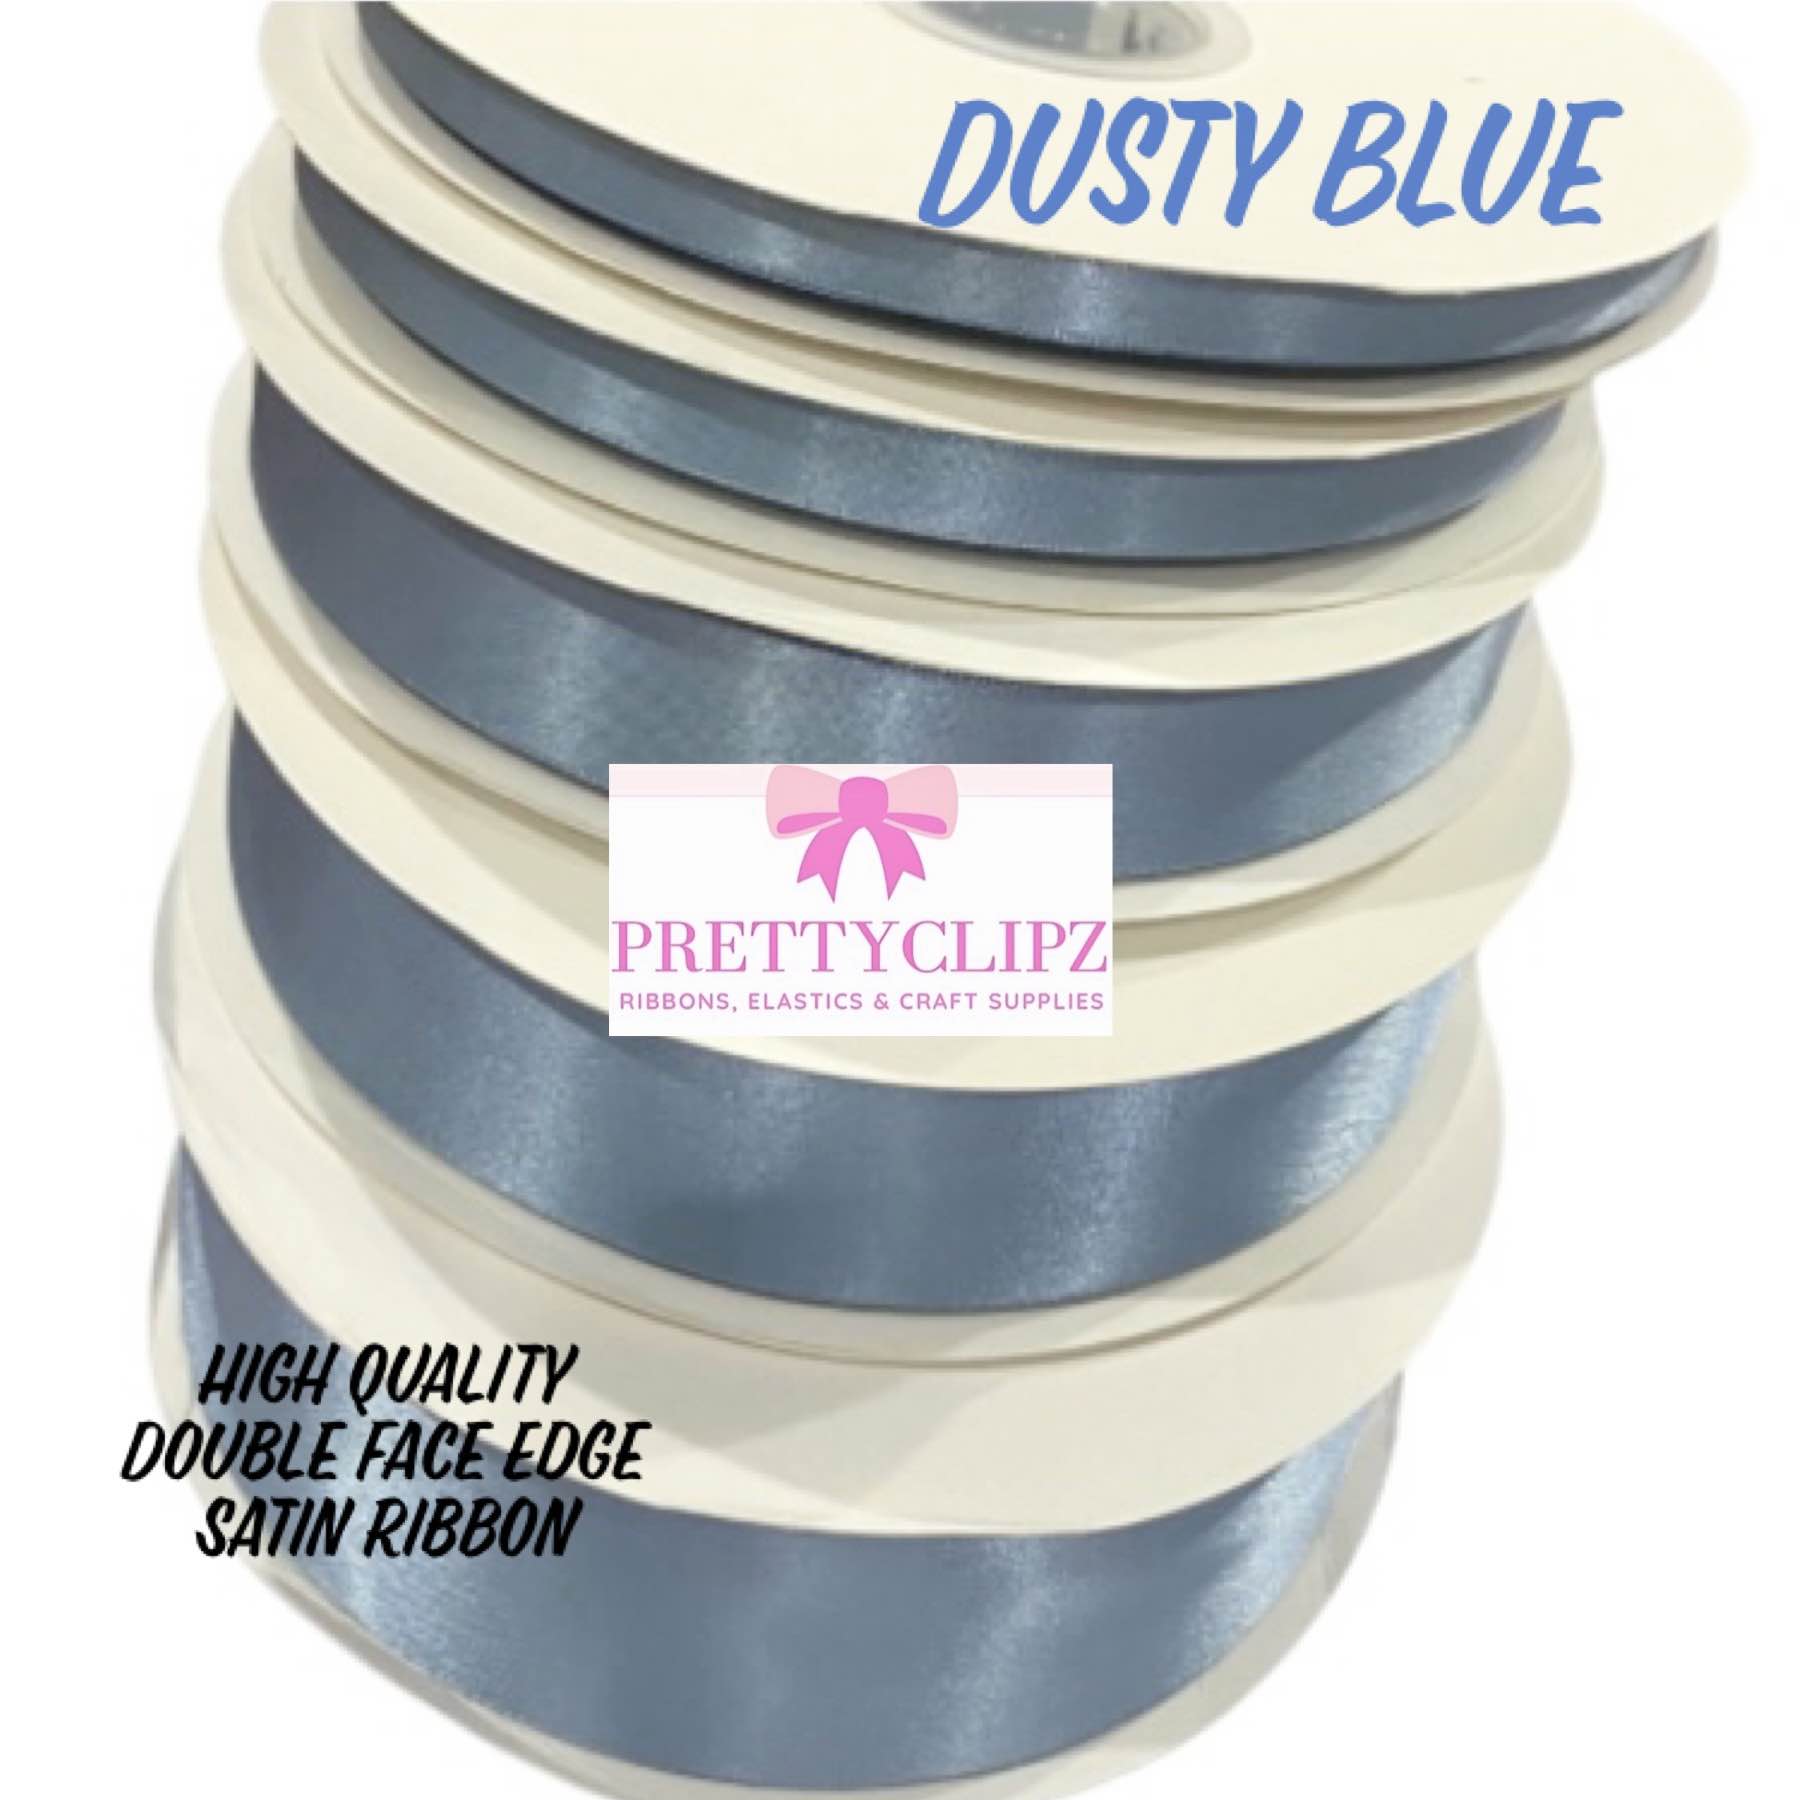 Dusty Blue Double Face Edge Satin Ribbon High Quality 25Y & 50Y Rolls